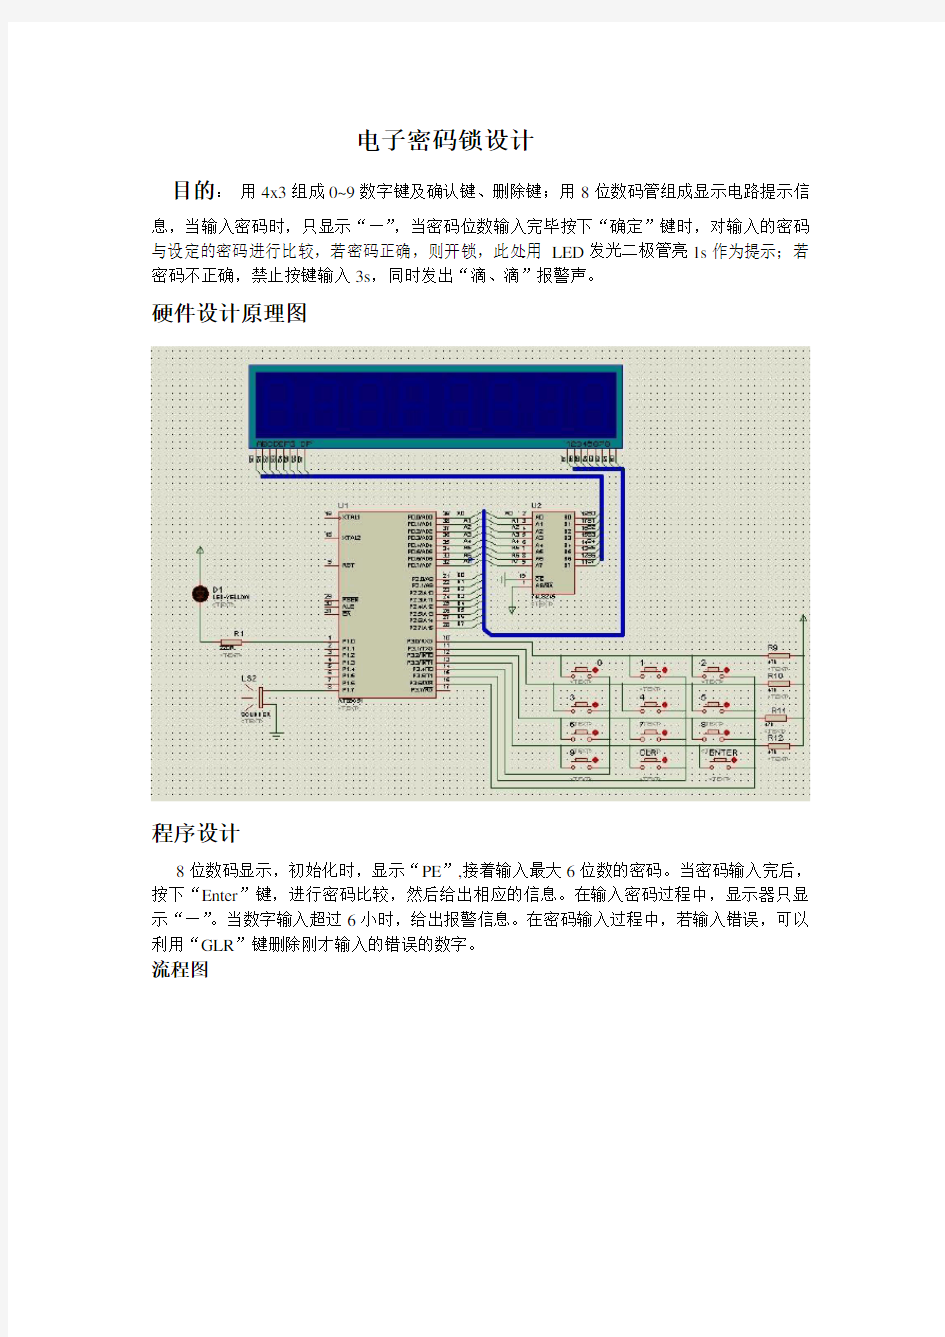 单片机开发板原理图及PCB设计